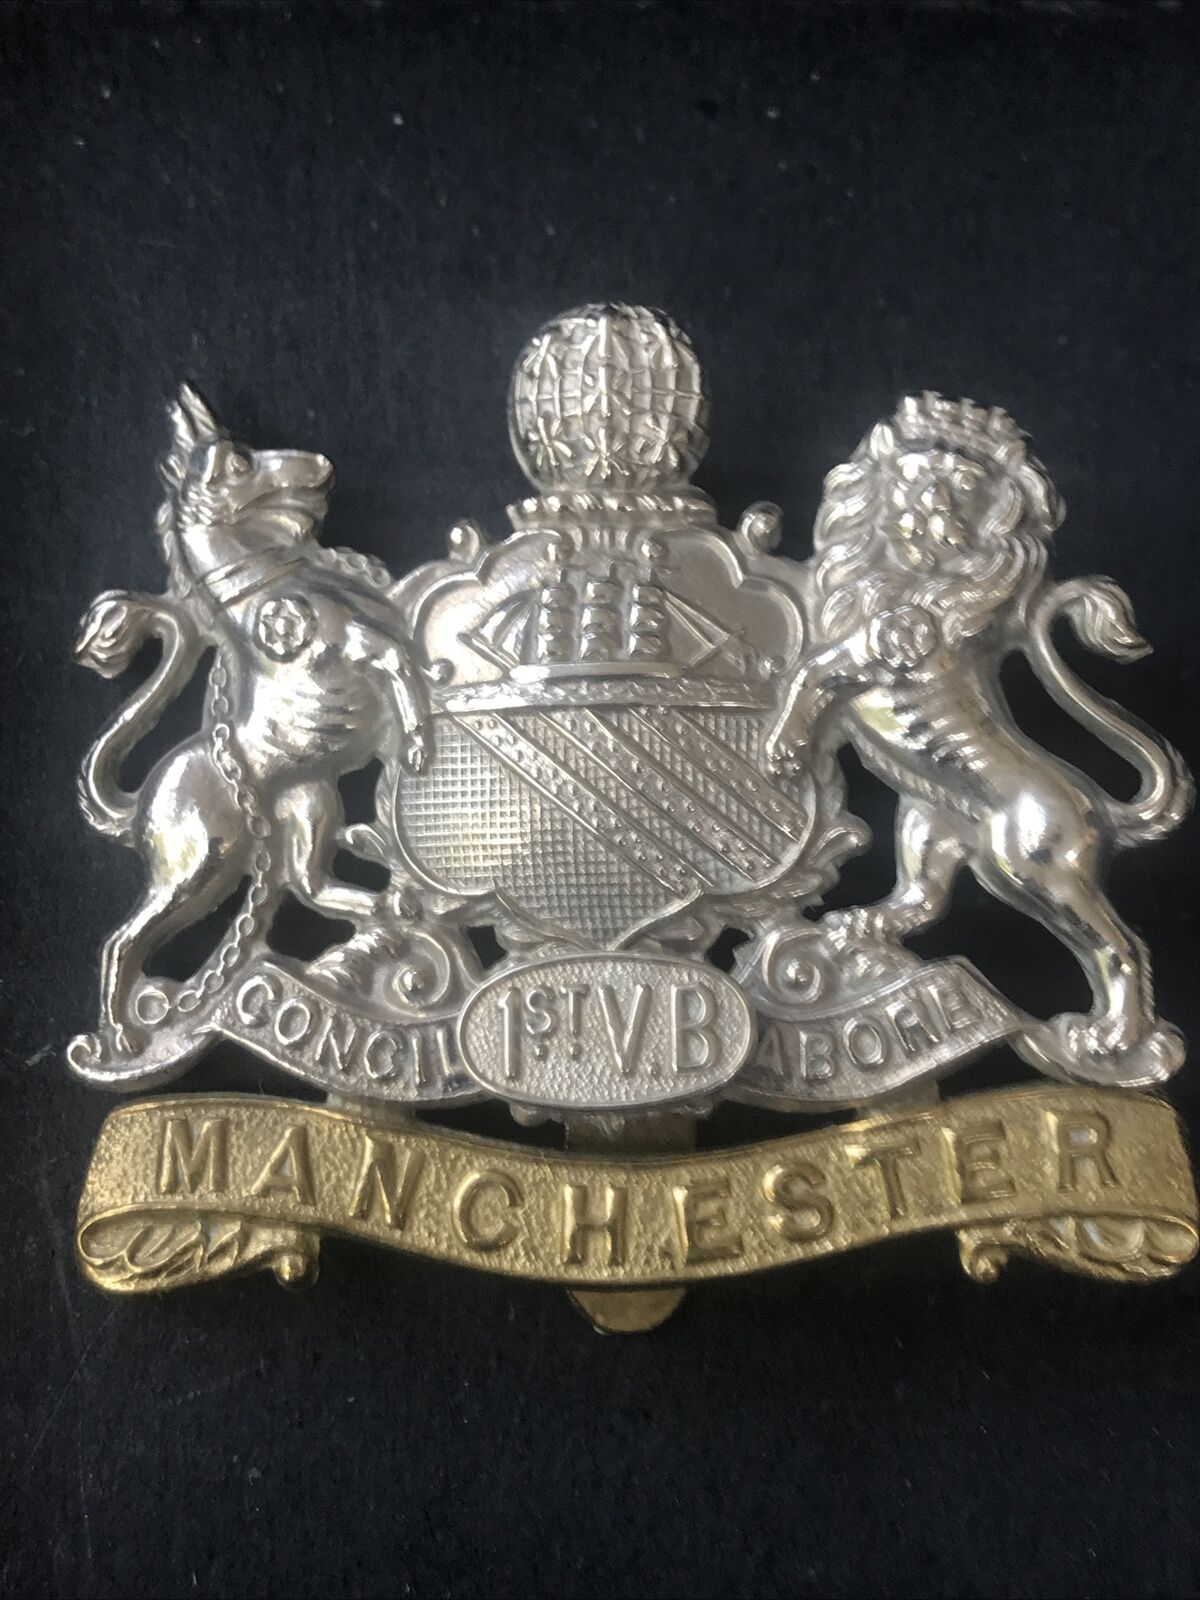 Manchester Regiment 1st Volunteer Battalion Original British Army Cap Badge